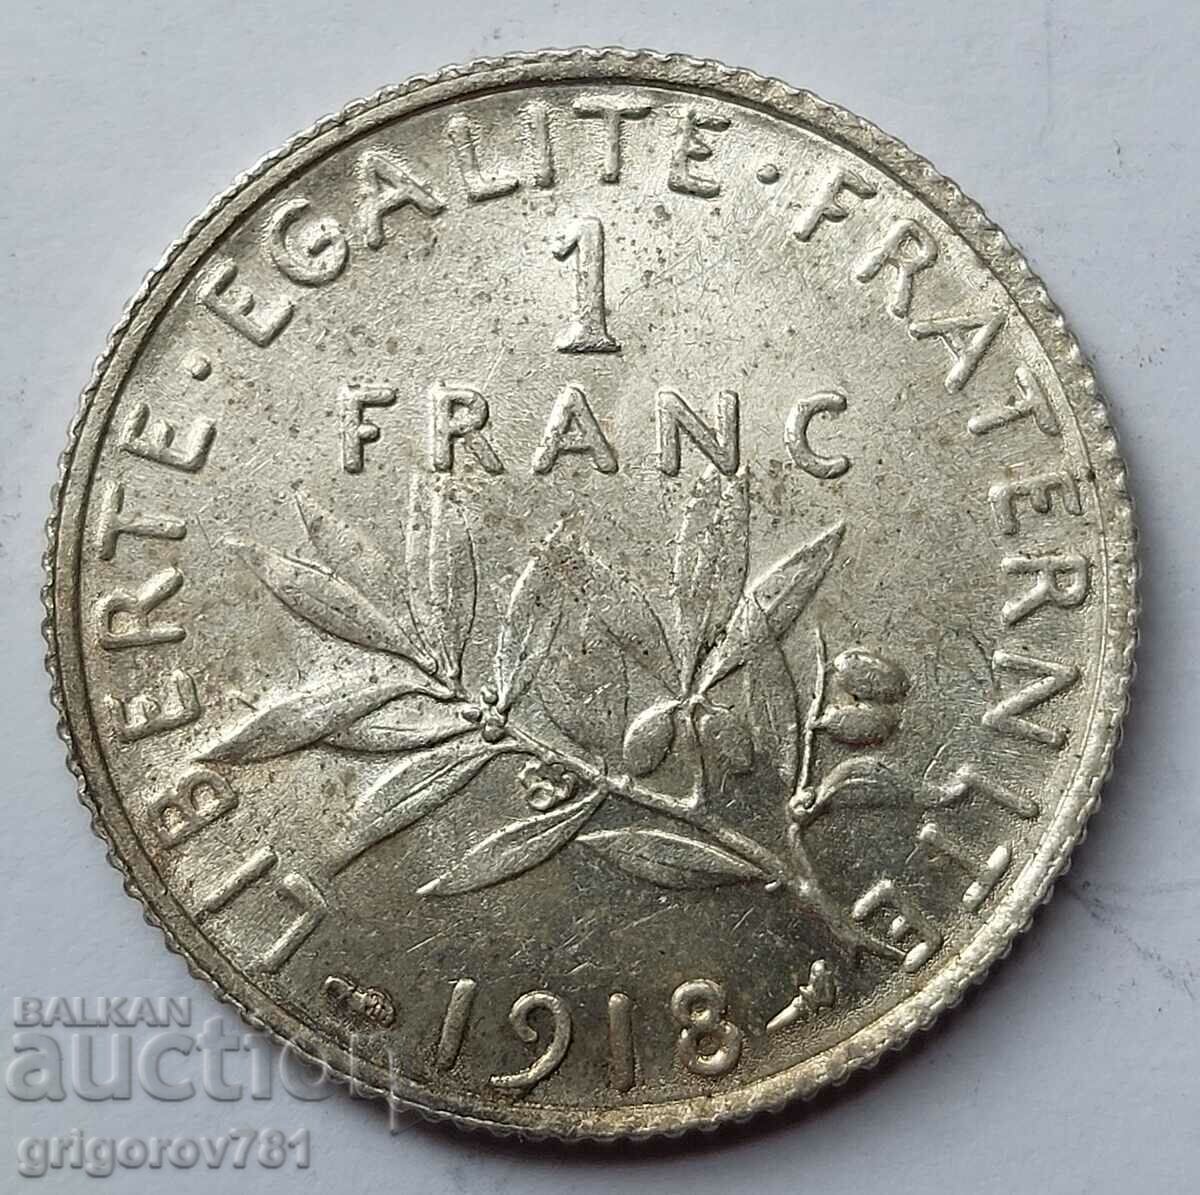 Ασημένιο 1 φράγκου Γαλλία 1918 - ασημένιο νόμισμα №19